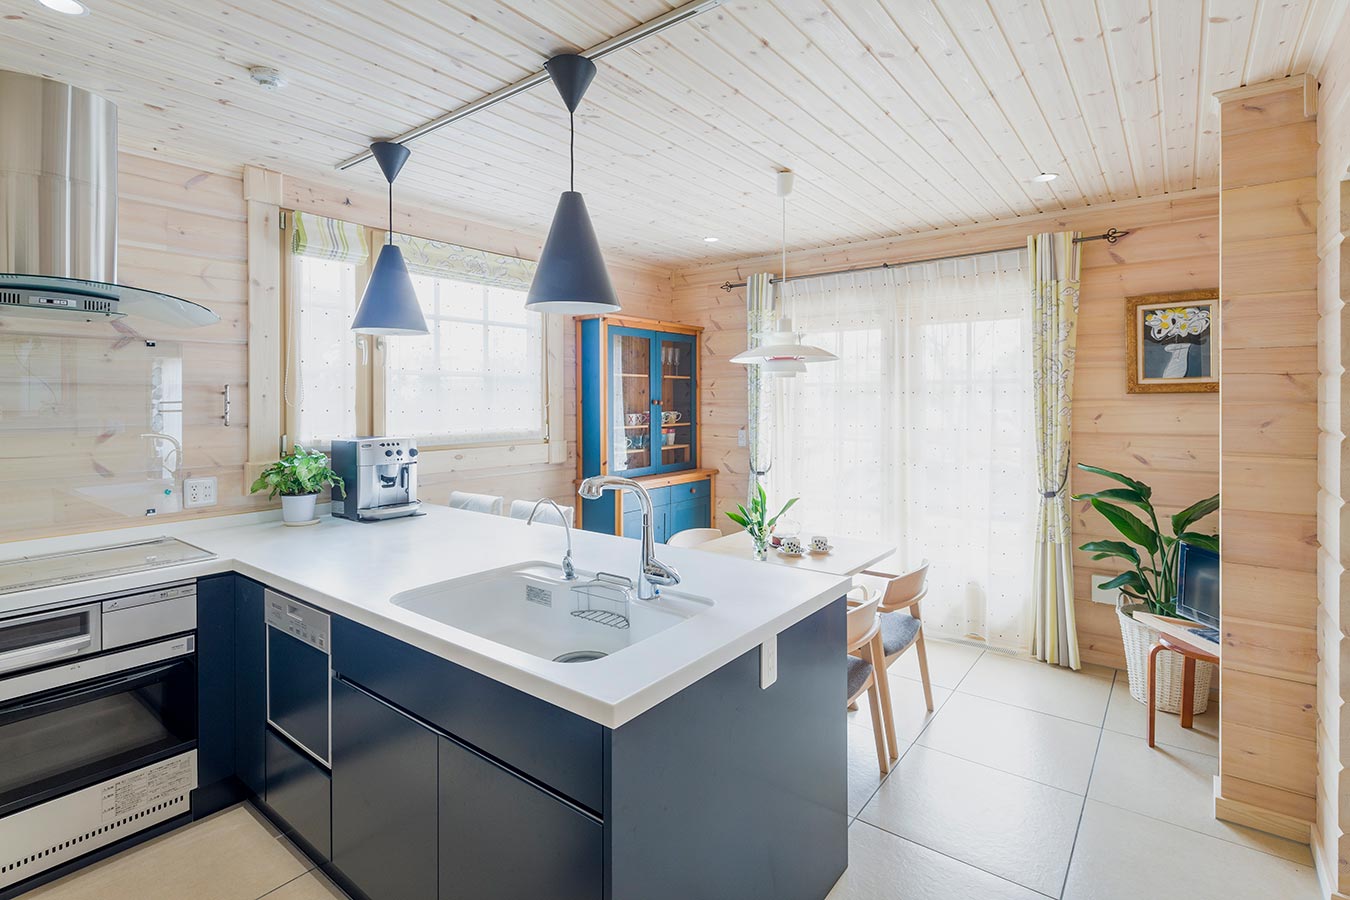 キッチンキャビネットや照明にも青色を取り入れることで室内に統一感が生まれます。